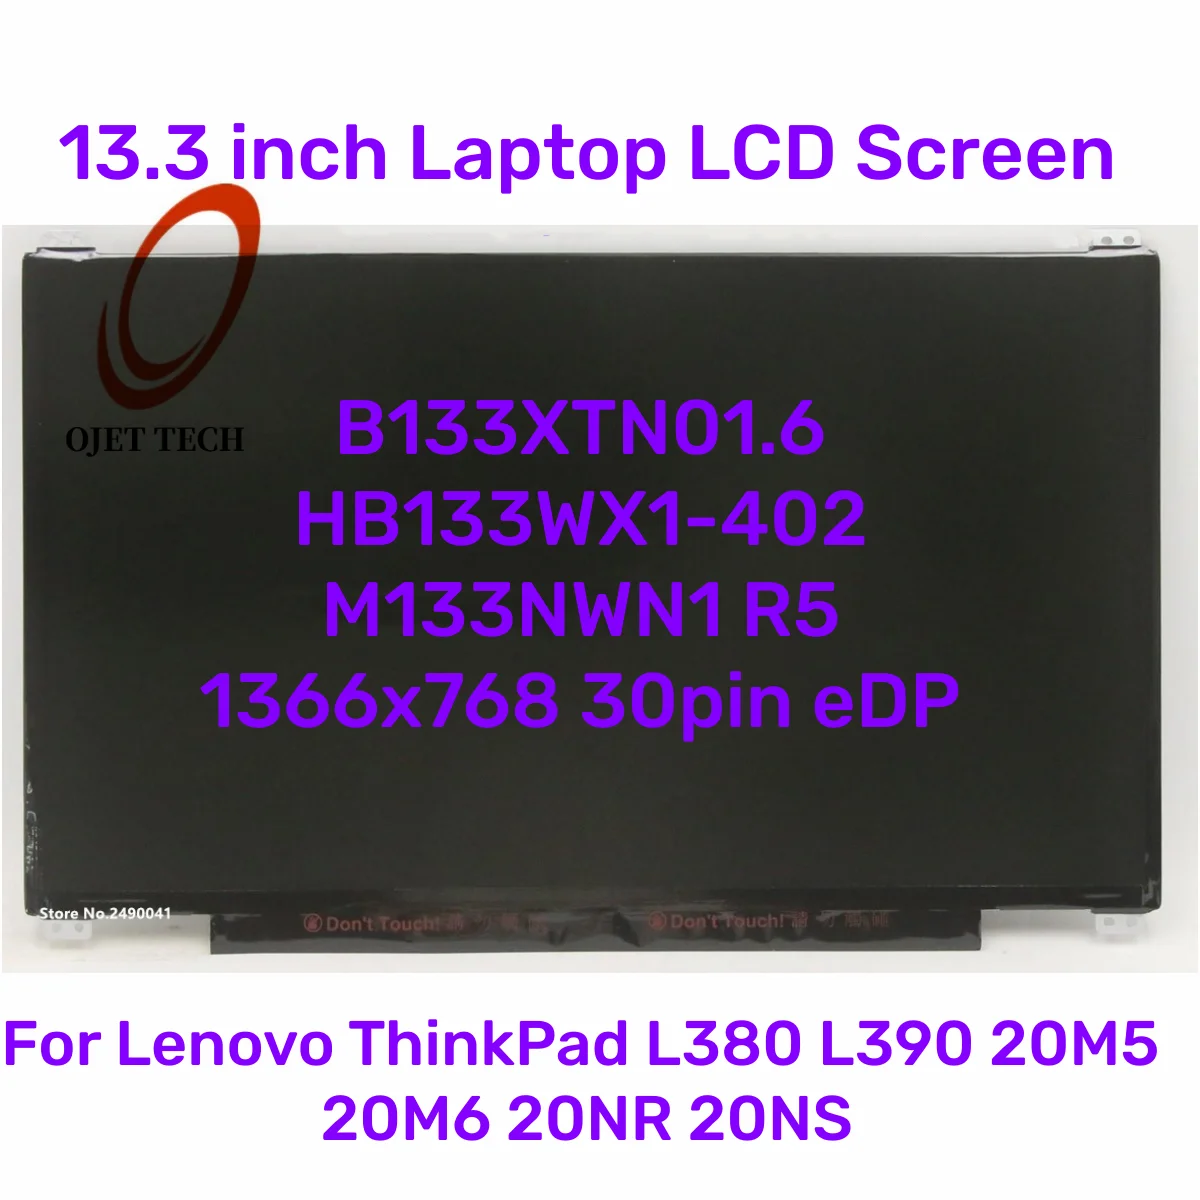 

13.3 Laptop LCD Screen B133XTN01.6 HB133WX1-402 M133NWN1 R5 For Lenovo ThinkPad L380 L390 20M5 20M6 20NR 20NS 1366x768 30pin eDP